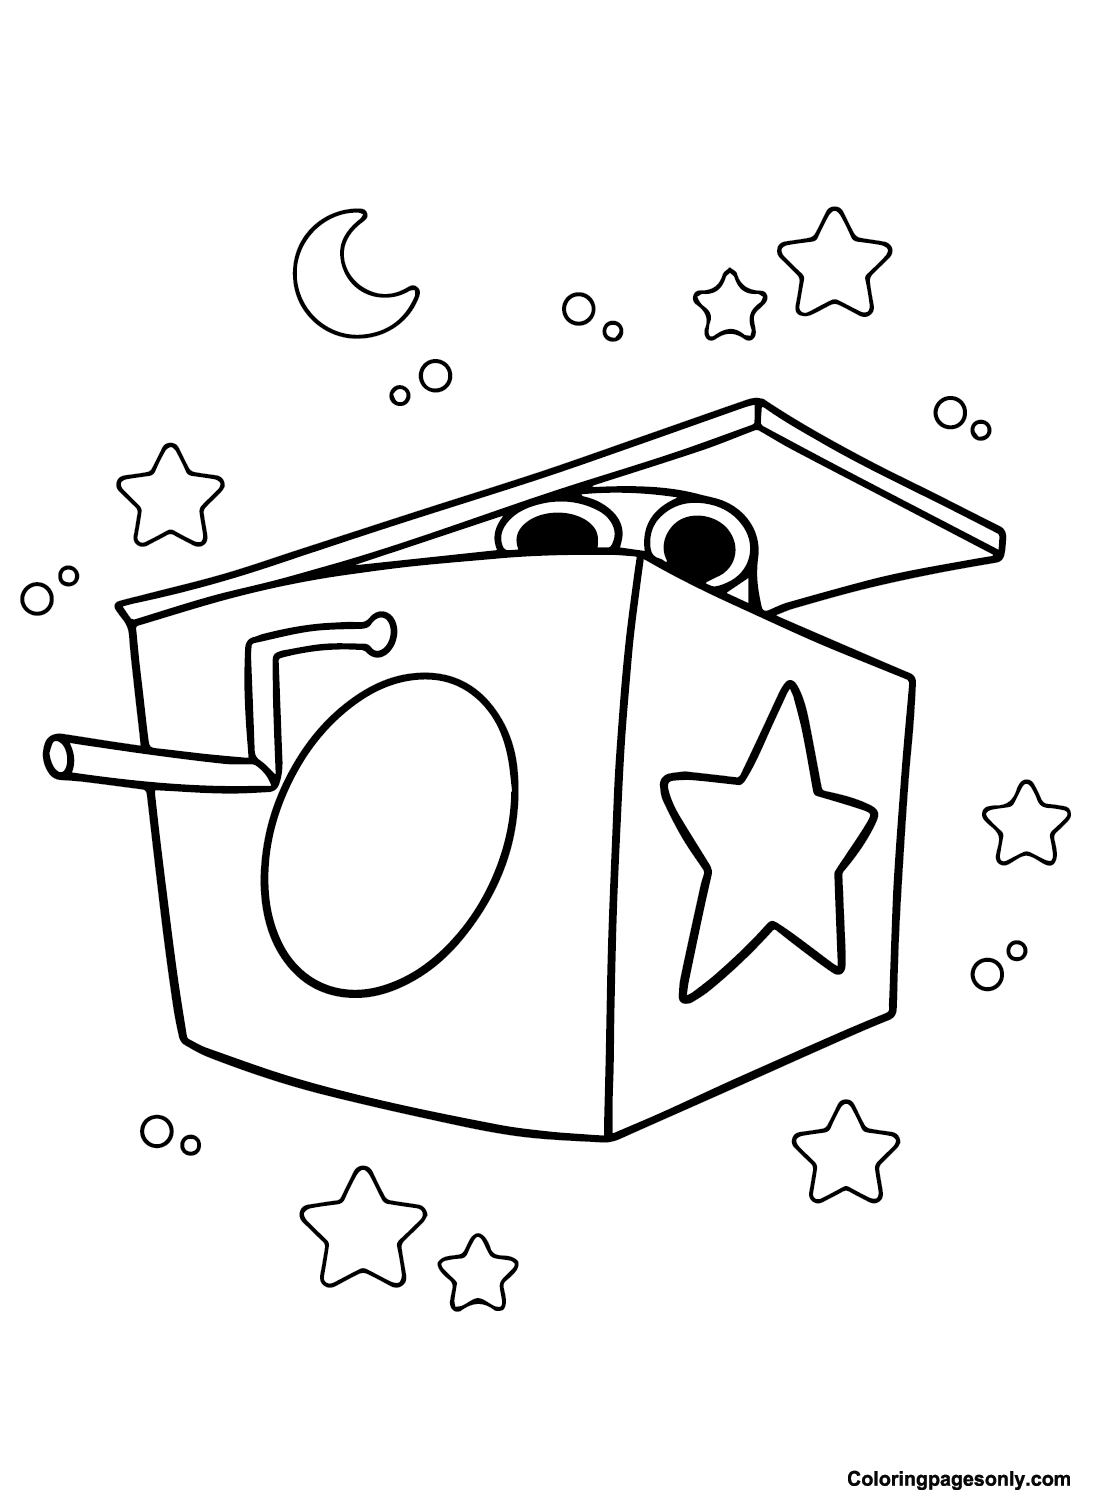 Desenhos para colorir de Boxy Boo in the Box - Desenhos para